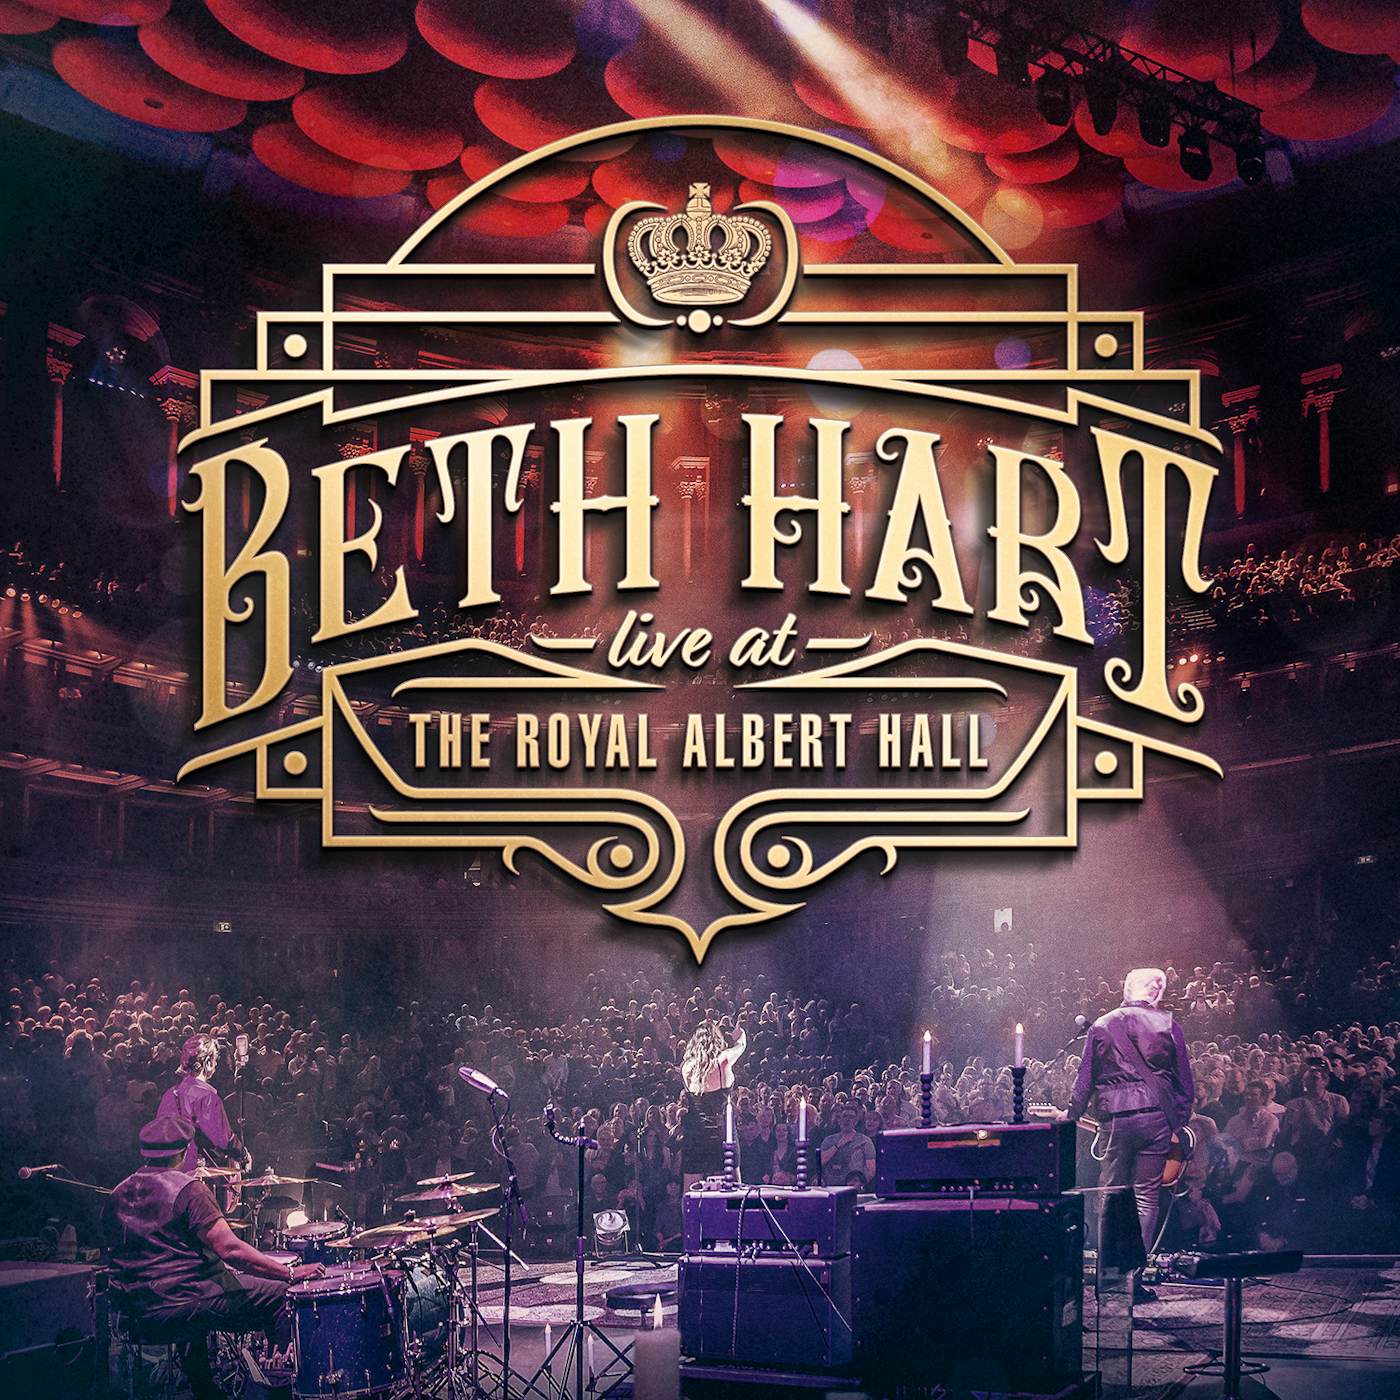 Beth Hart LIVE AT THE ROYAL ALBERT HALL CD